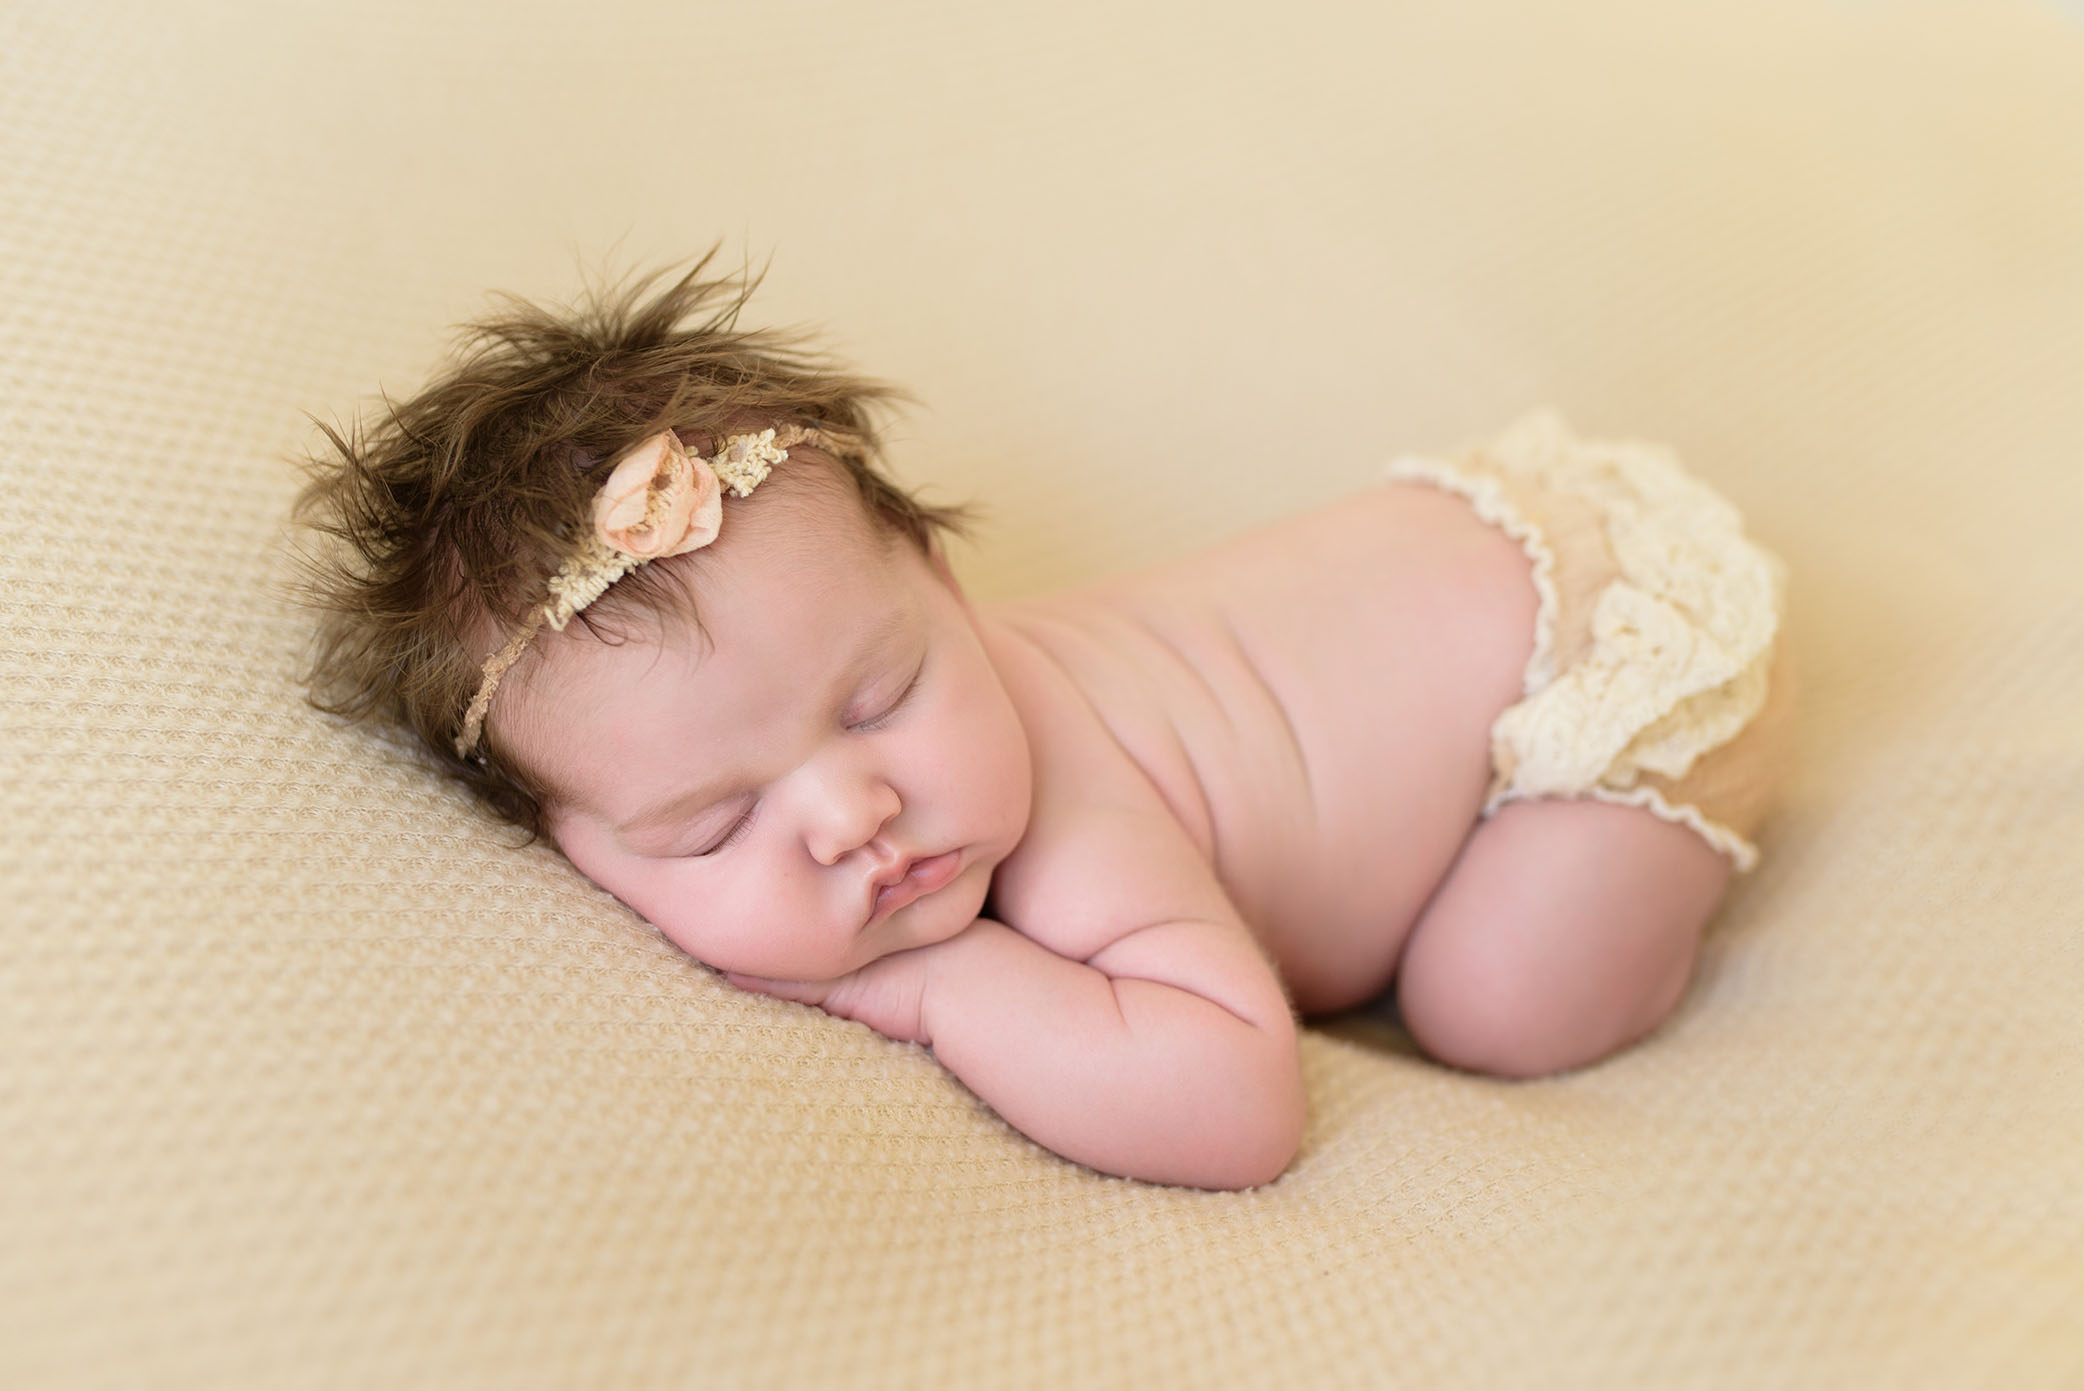 Newborn baby posed on her tummy in beige